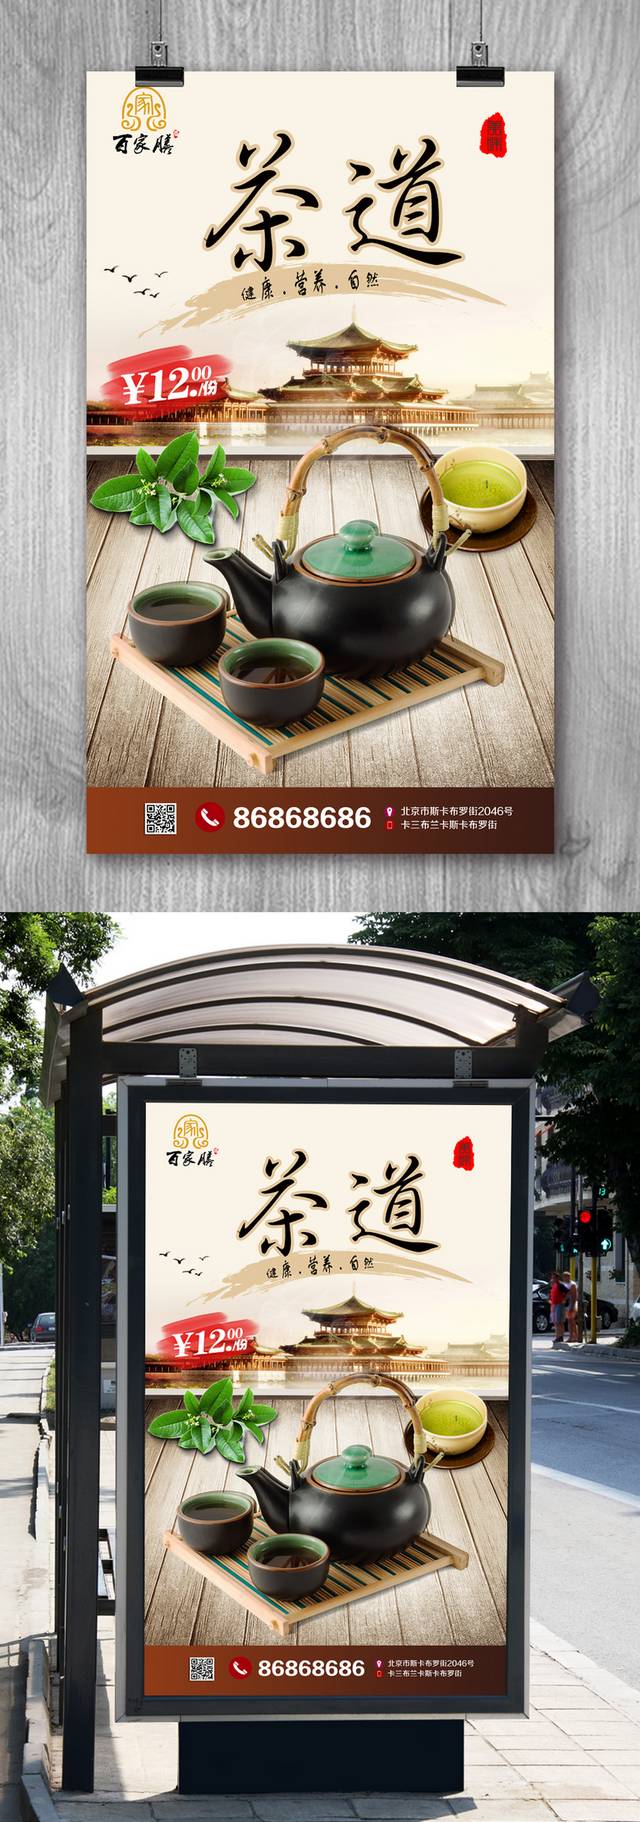 中国风复古碧螺春宣传海报设计